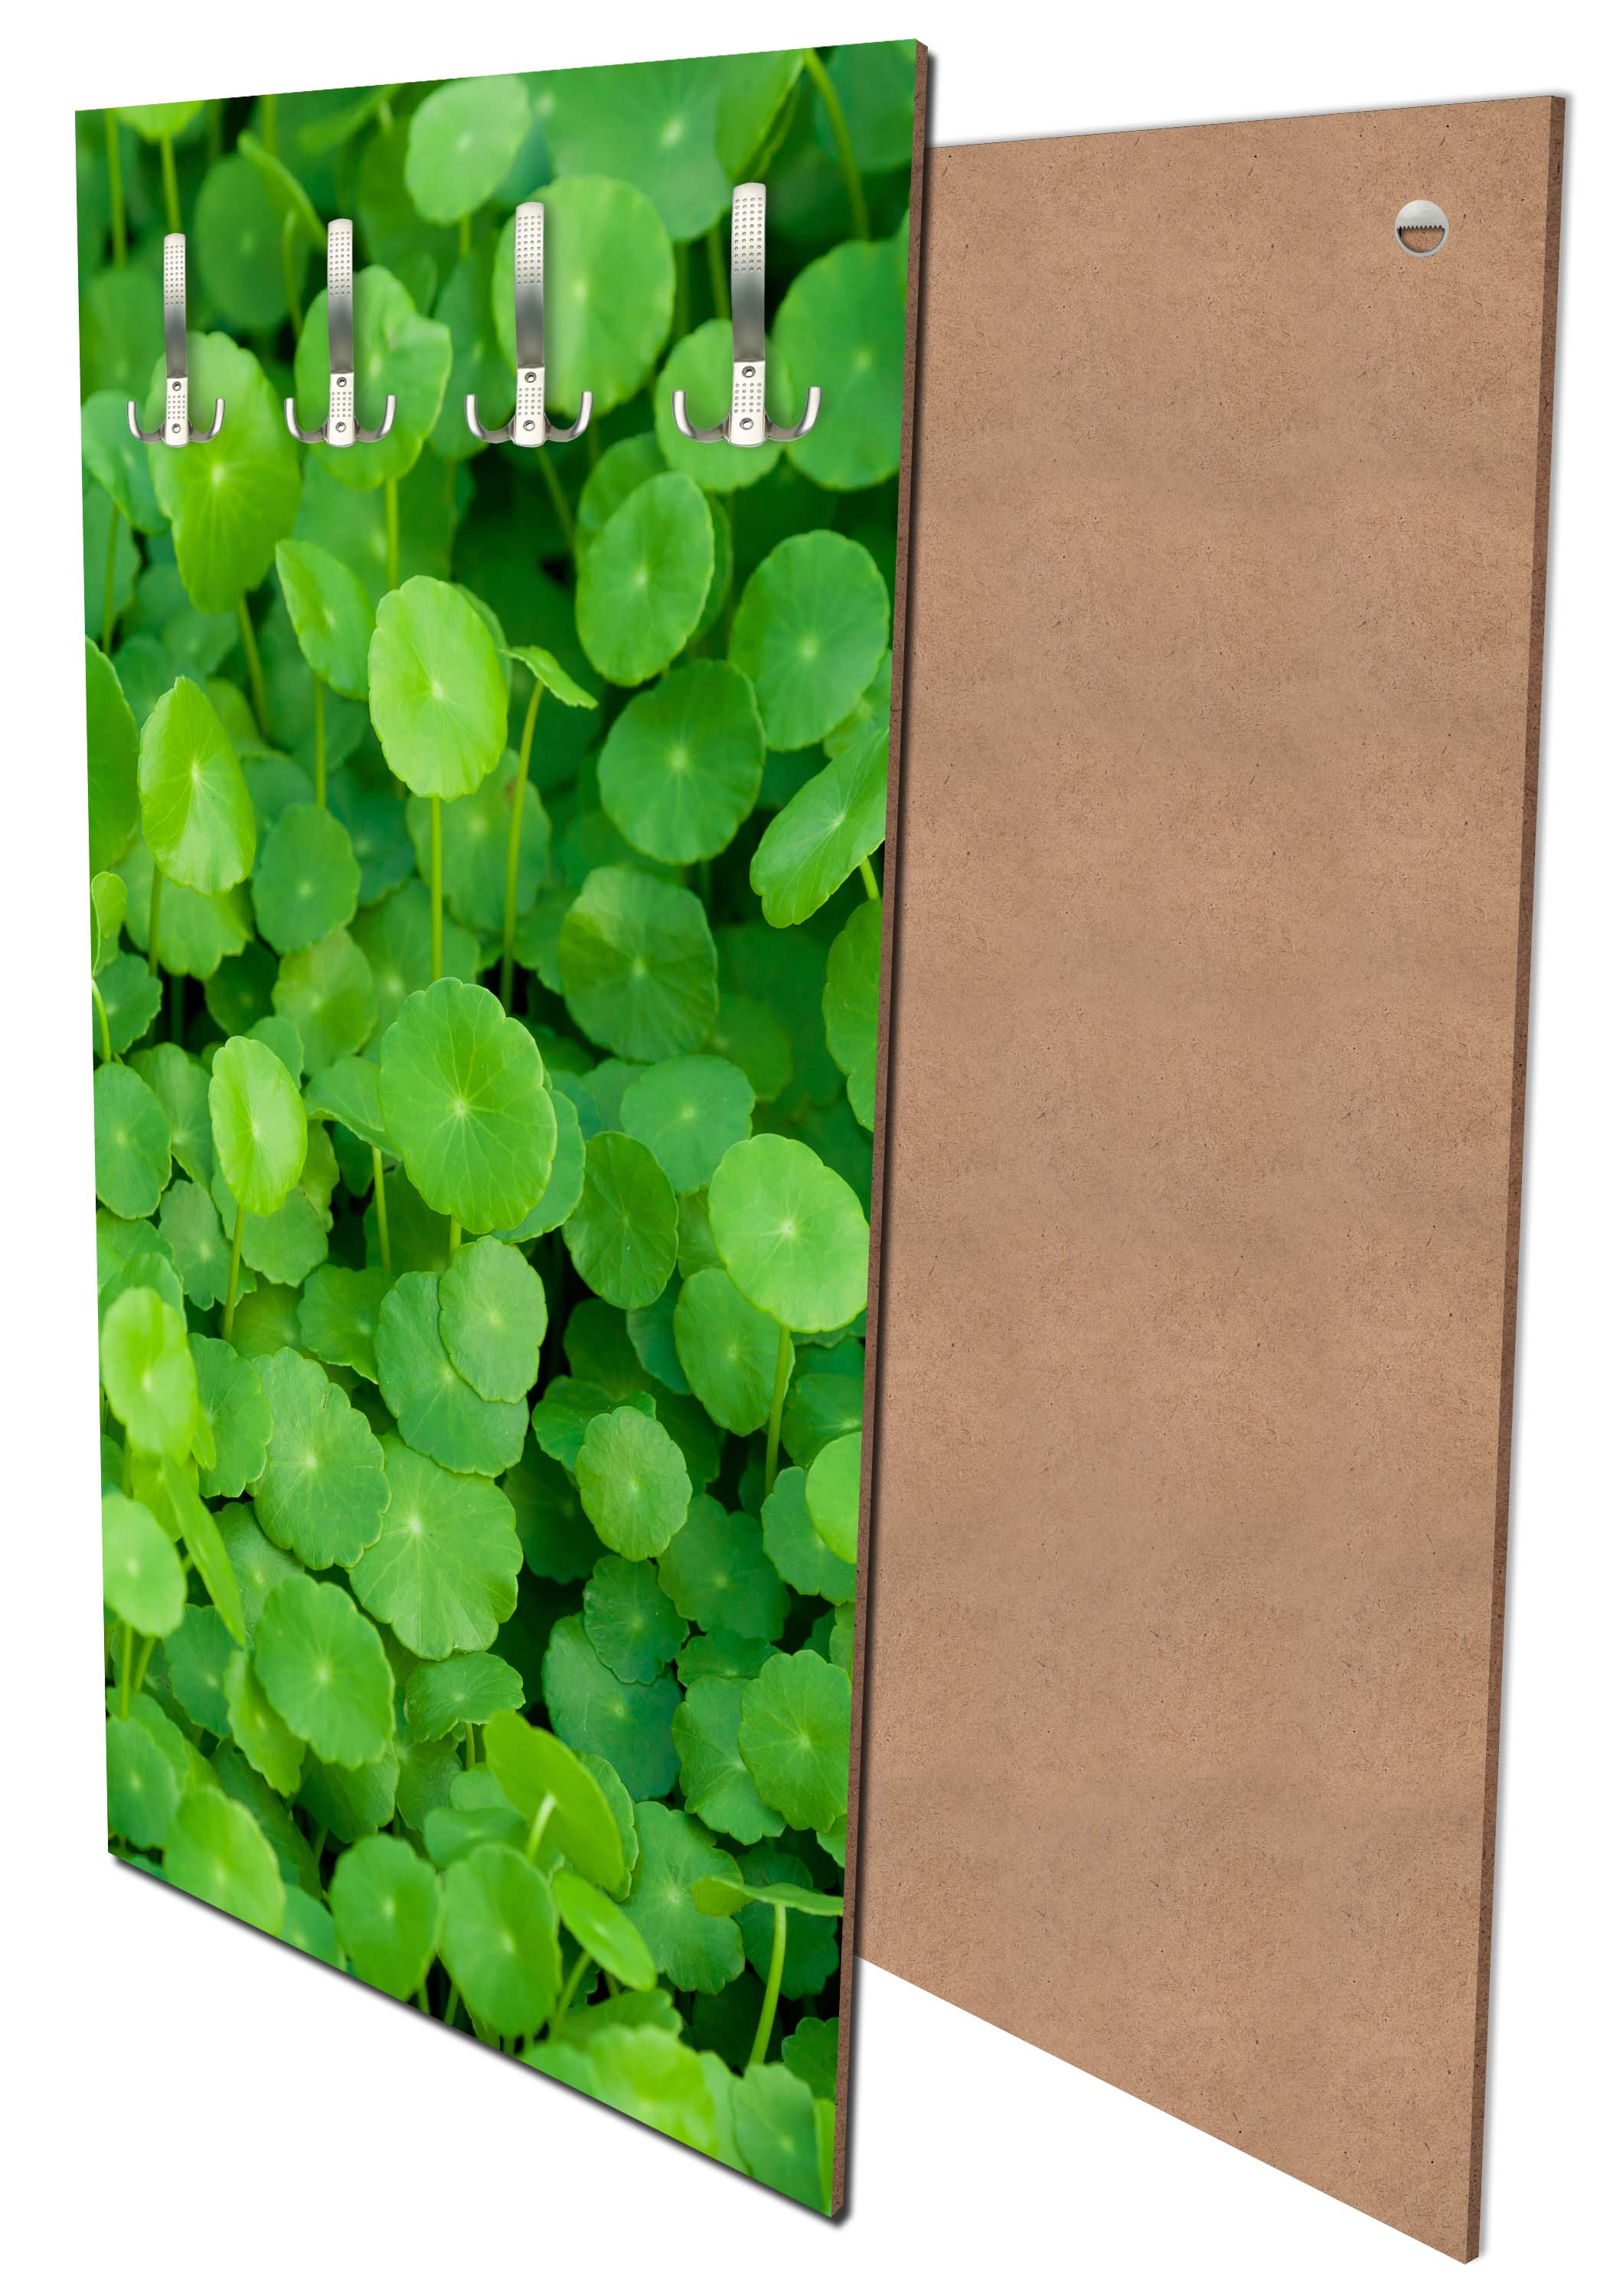 Garderobe Grünpflanzen Hintergrund M1046 entdecken - Bild 1